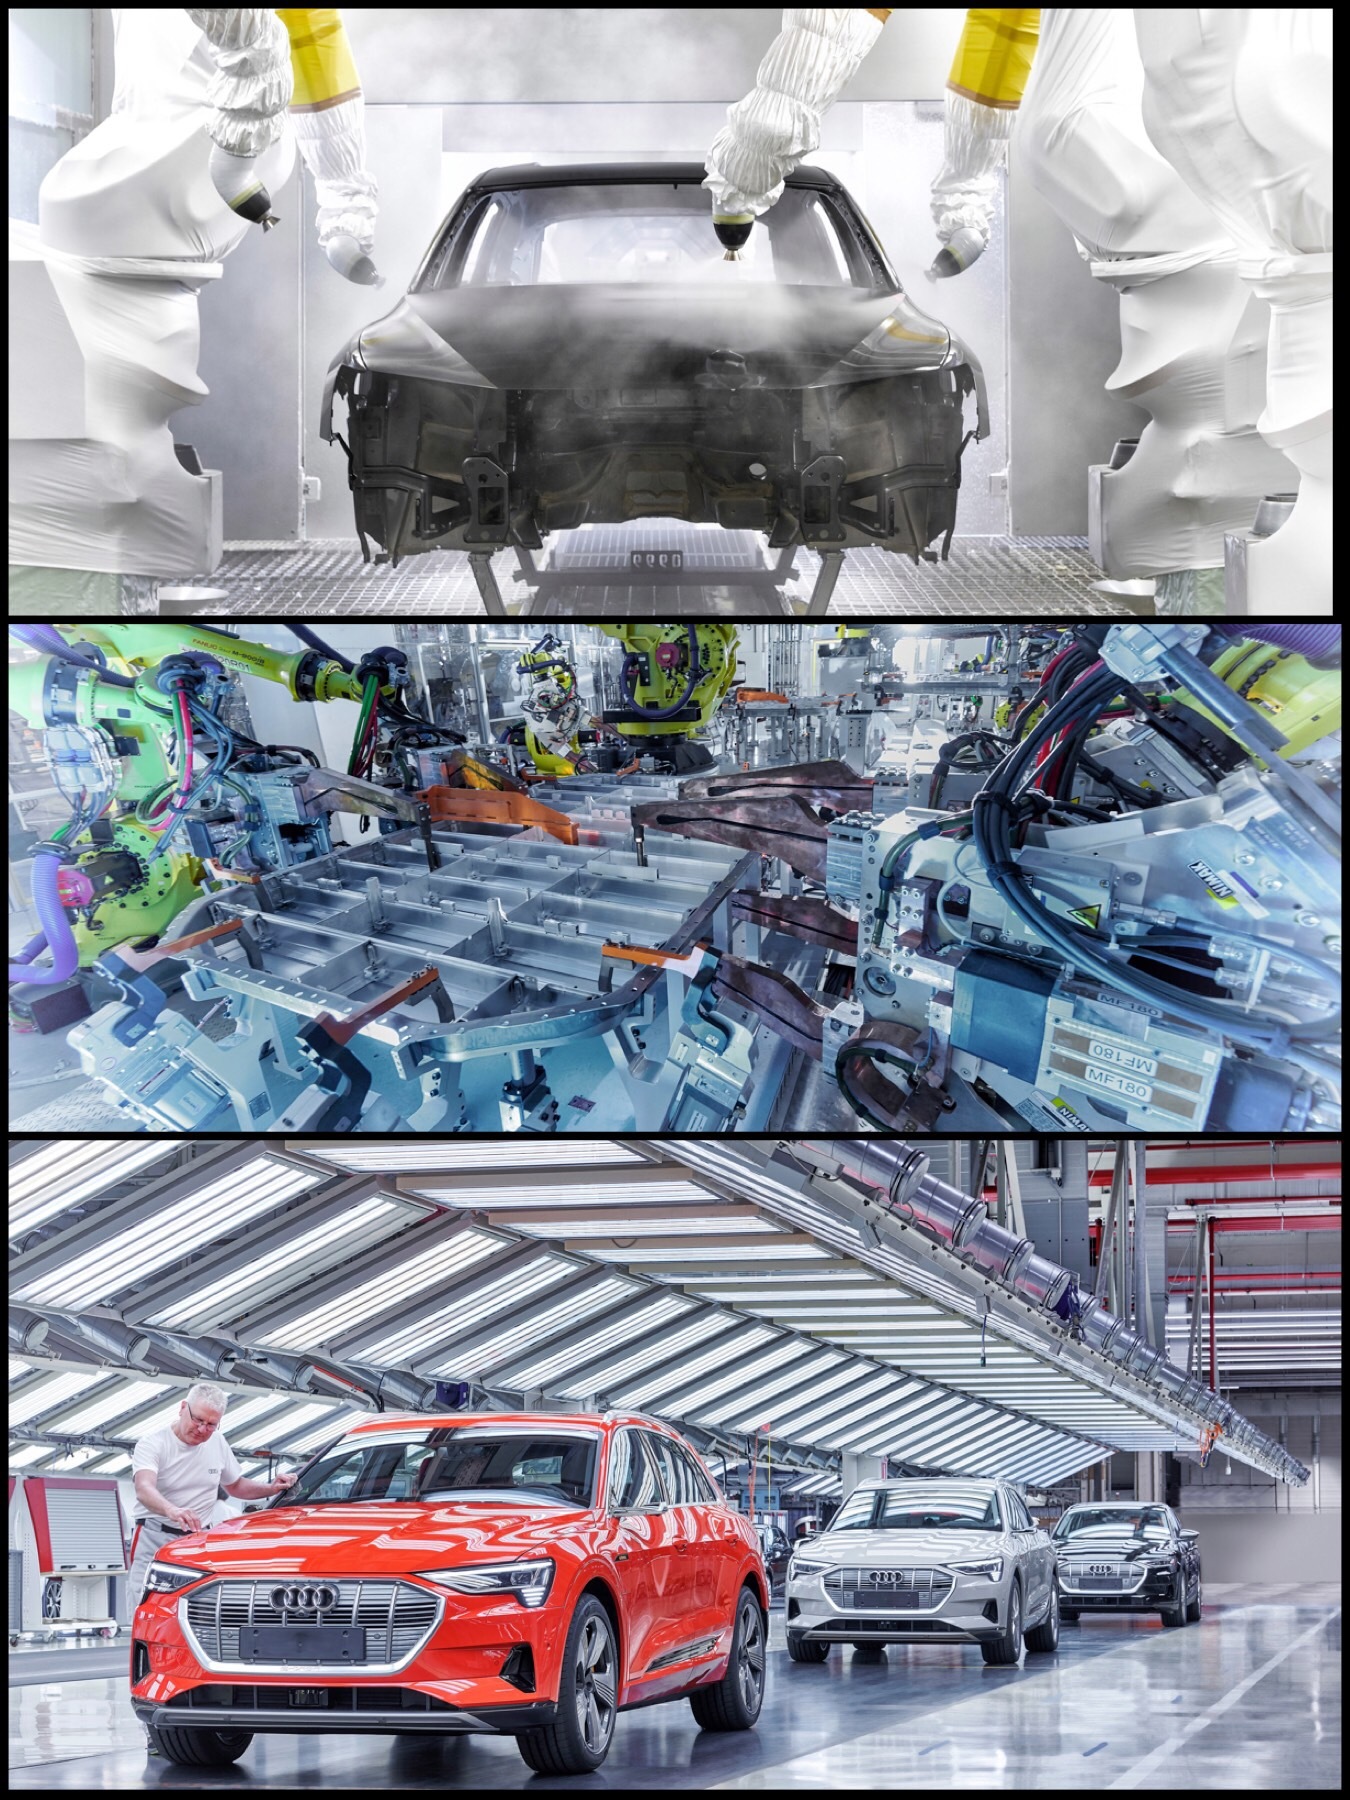 「Audi e-tron」のブリュッセル工場がカッコいい